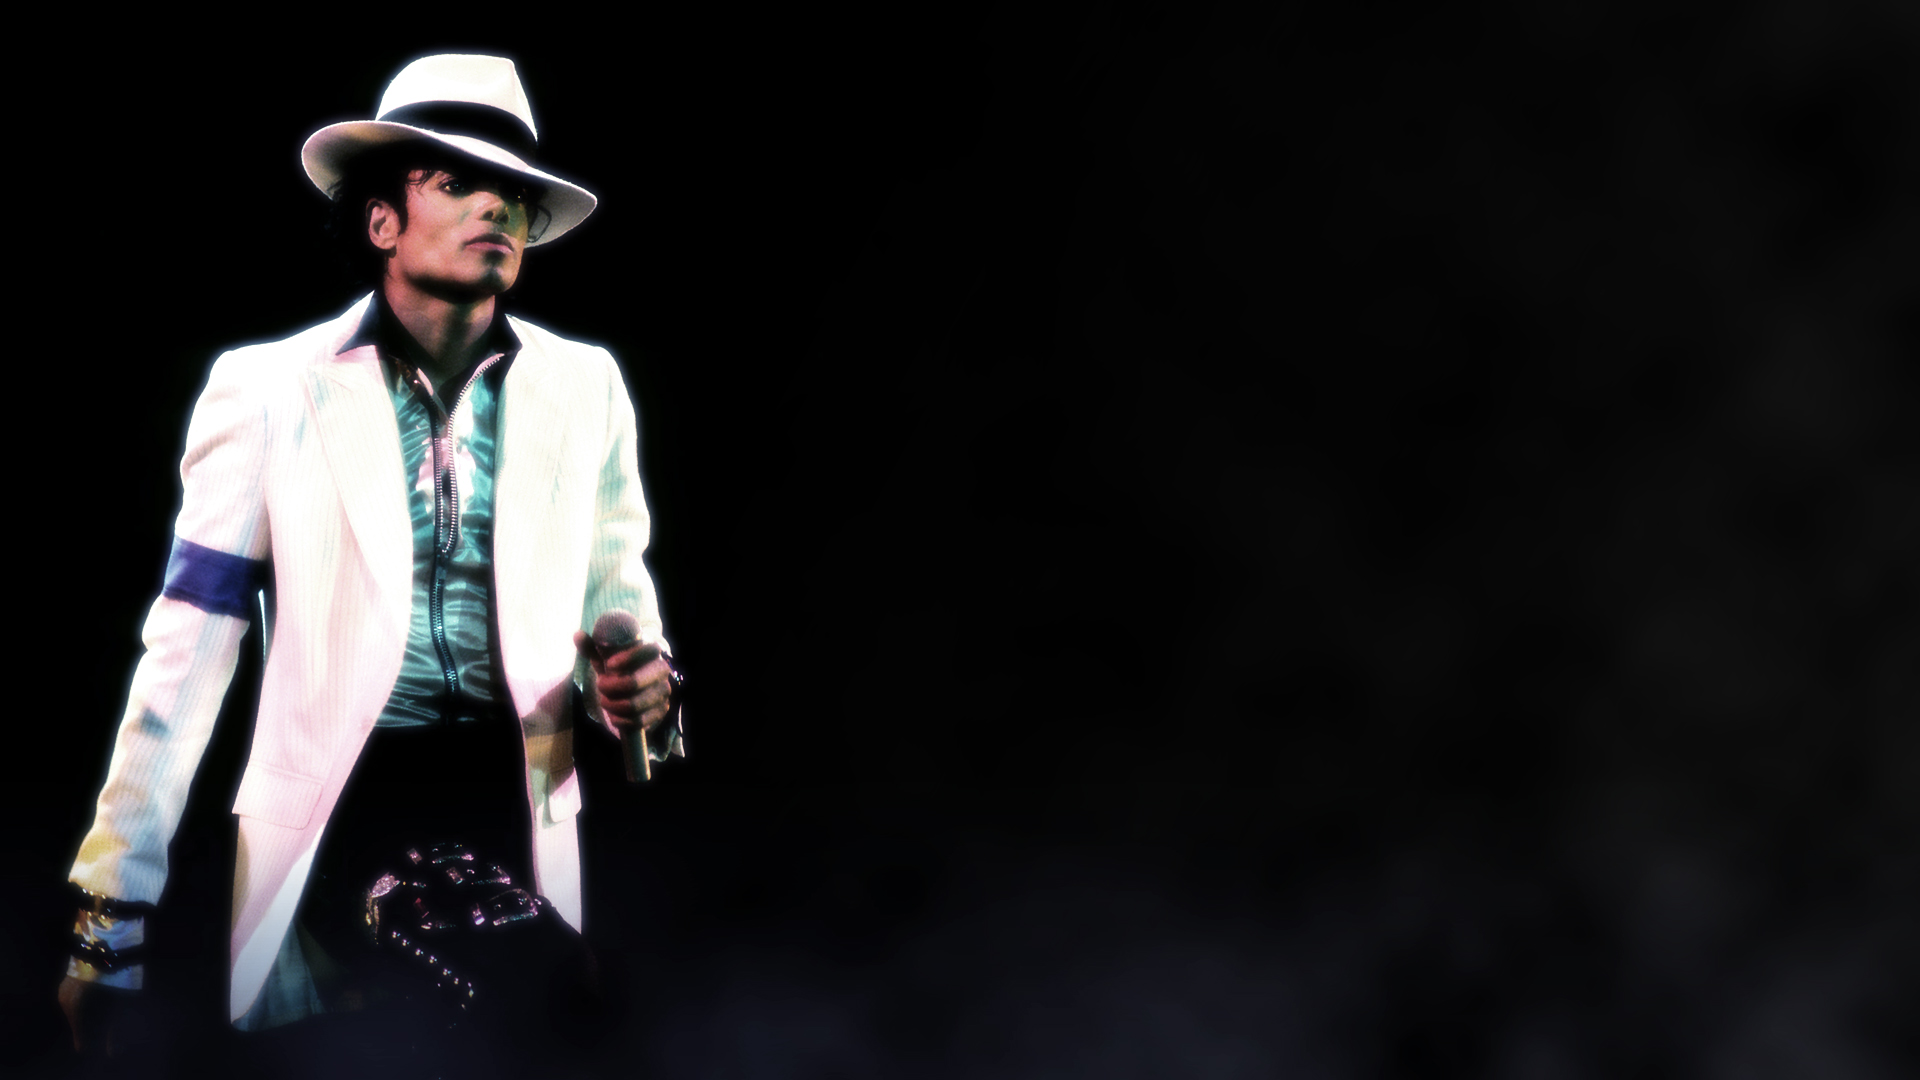 Fond d'écran - Michael Jackson.jpg